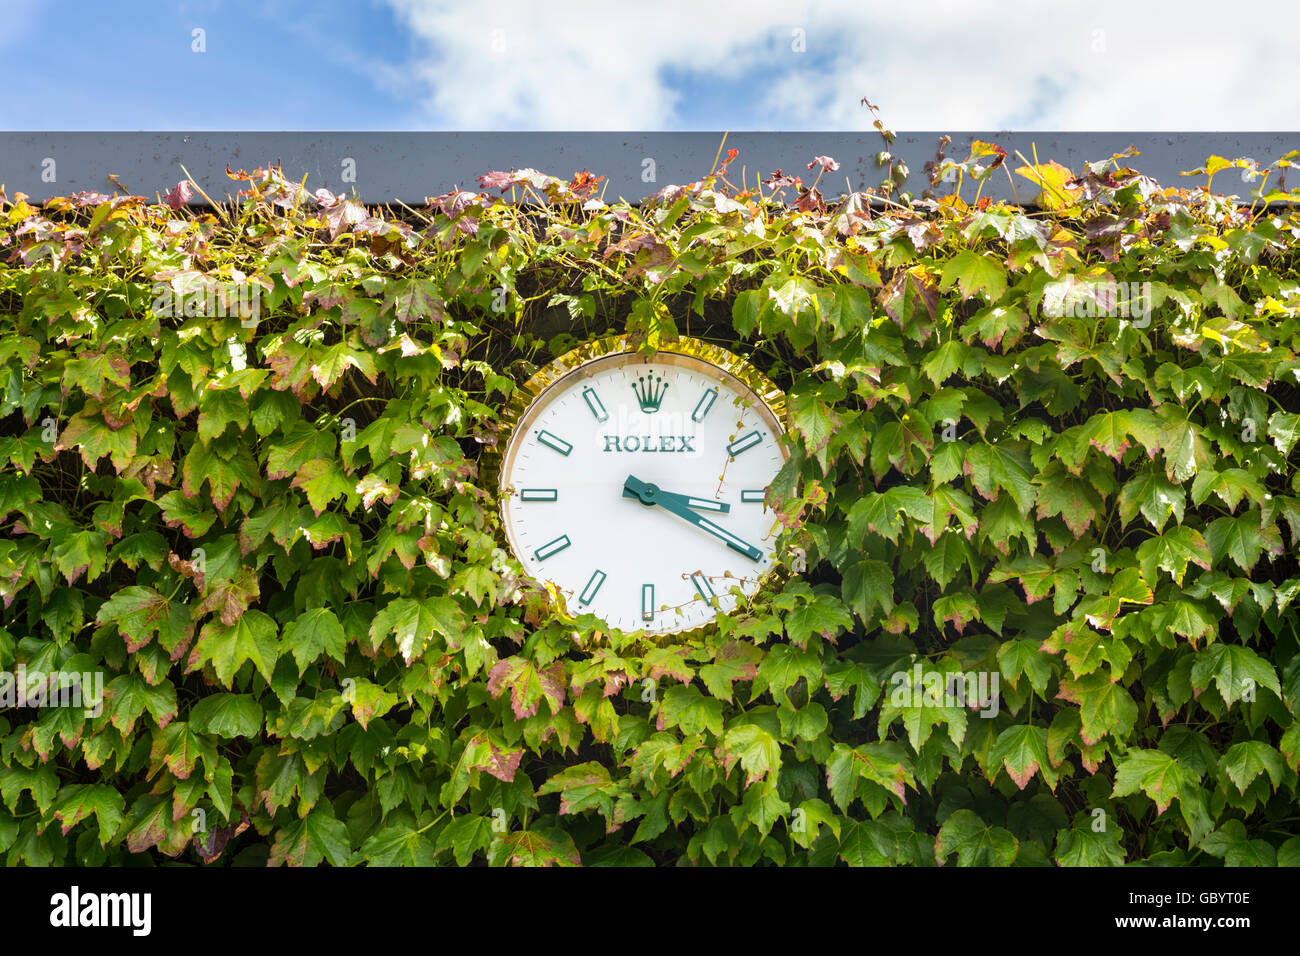 Rolex orologio da parete circondata da edera a tutti England Lawn Tennis Club durante il torneo di Wimbledon 2016 Foto Stock